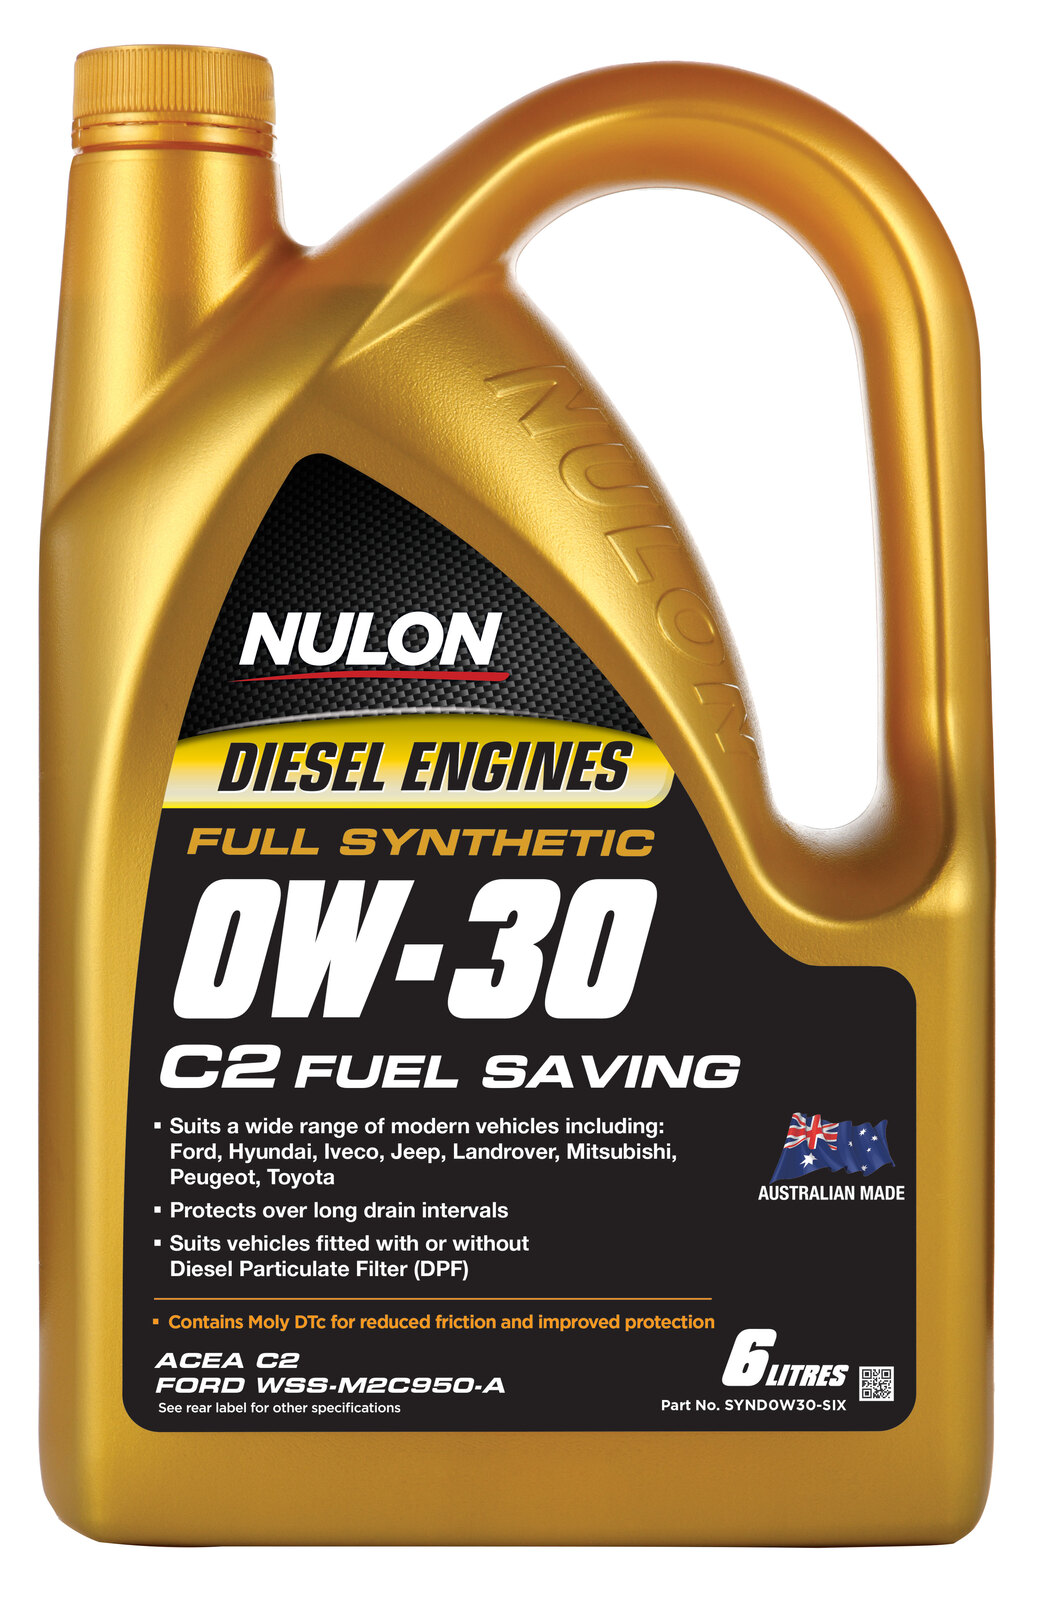 NULON Full Synthetic 0W-30 Fuel Conserving Diesel En, Each